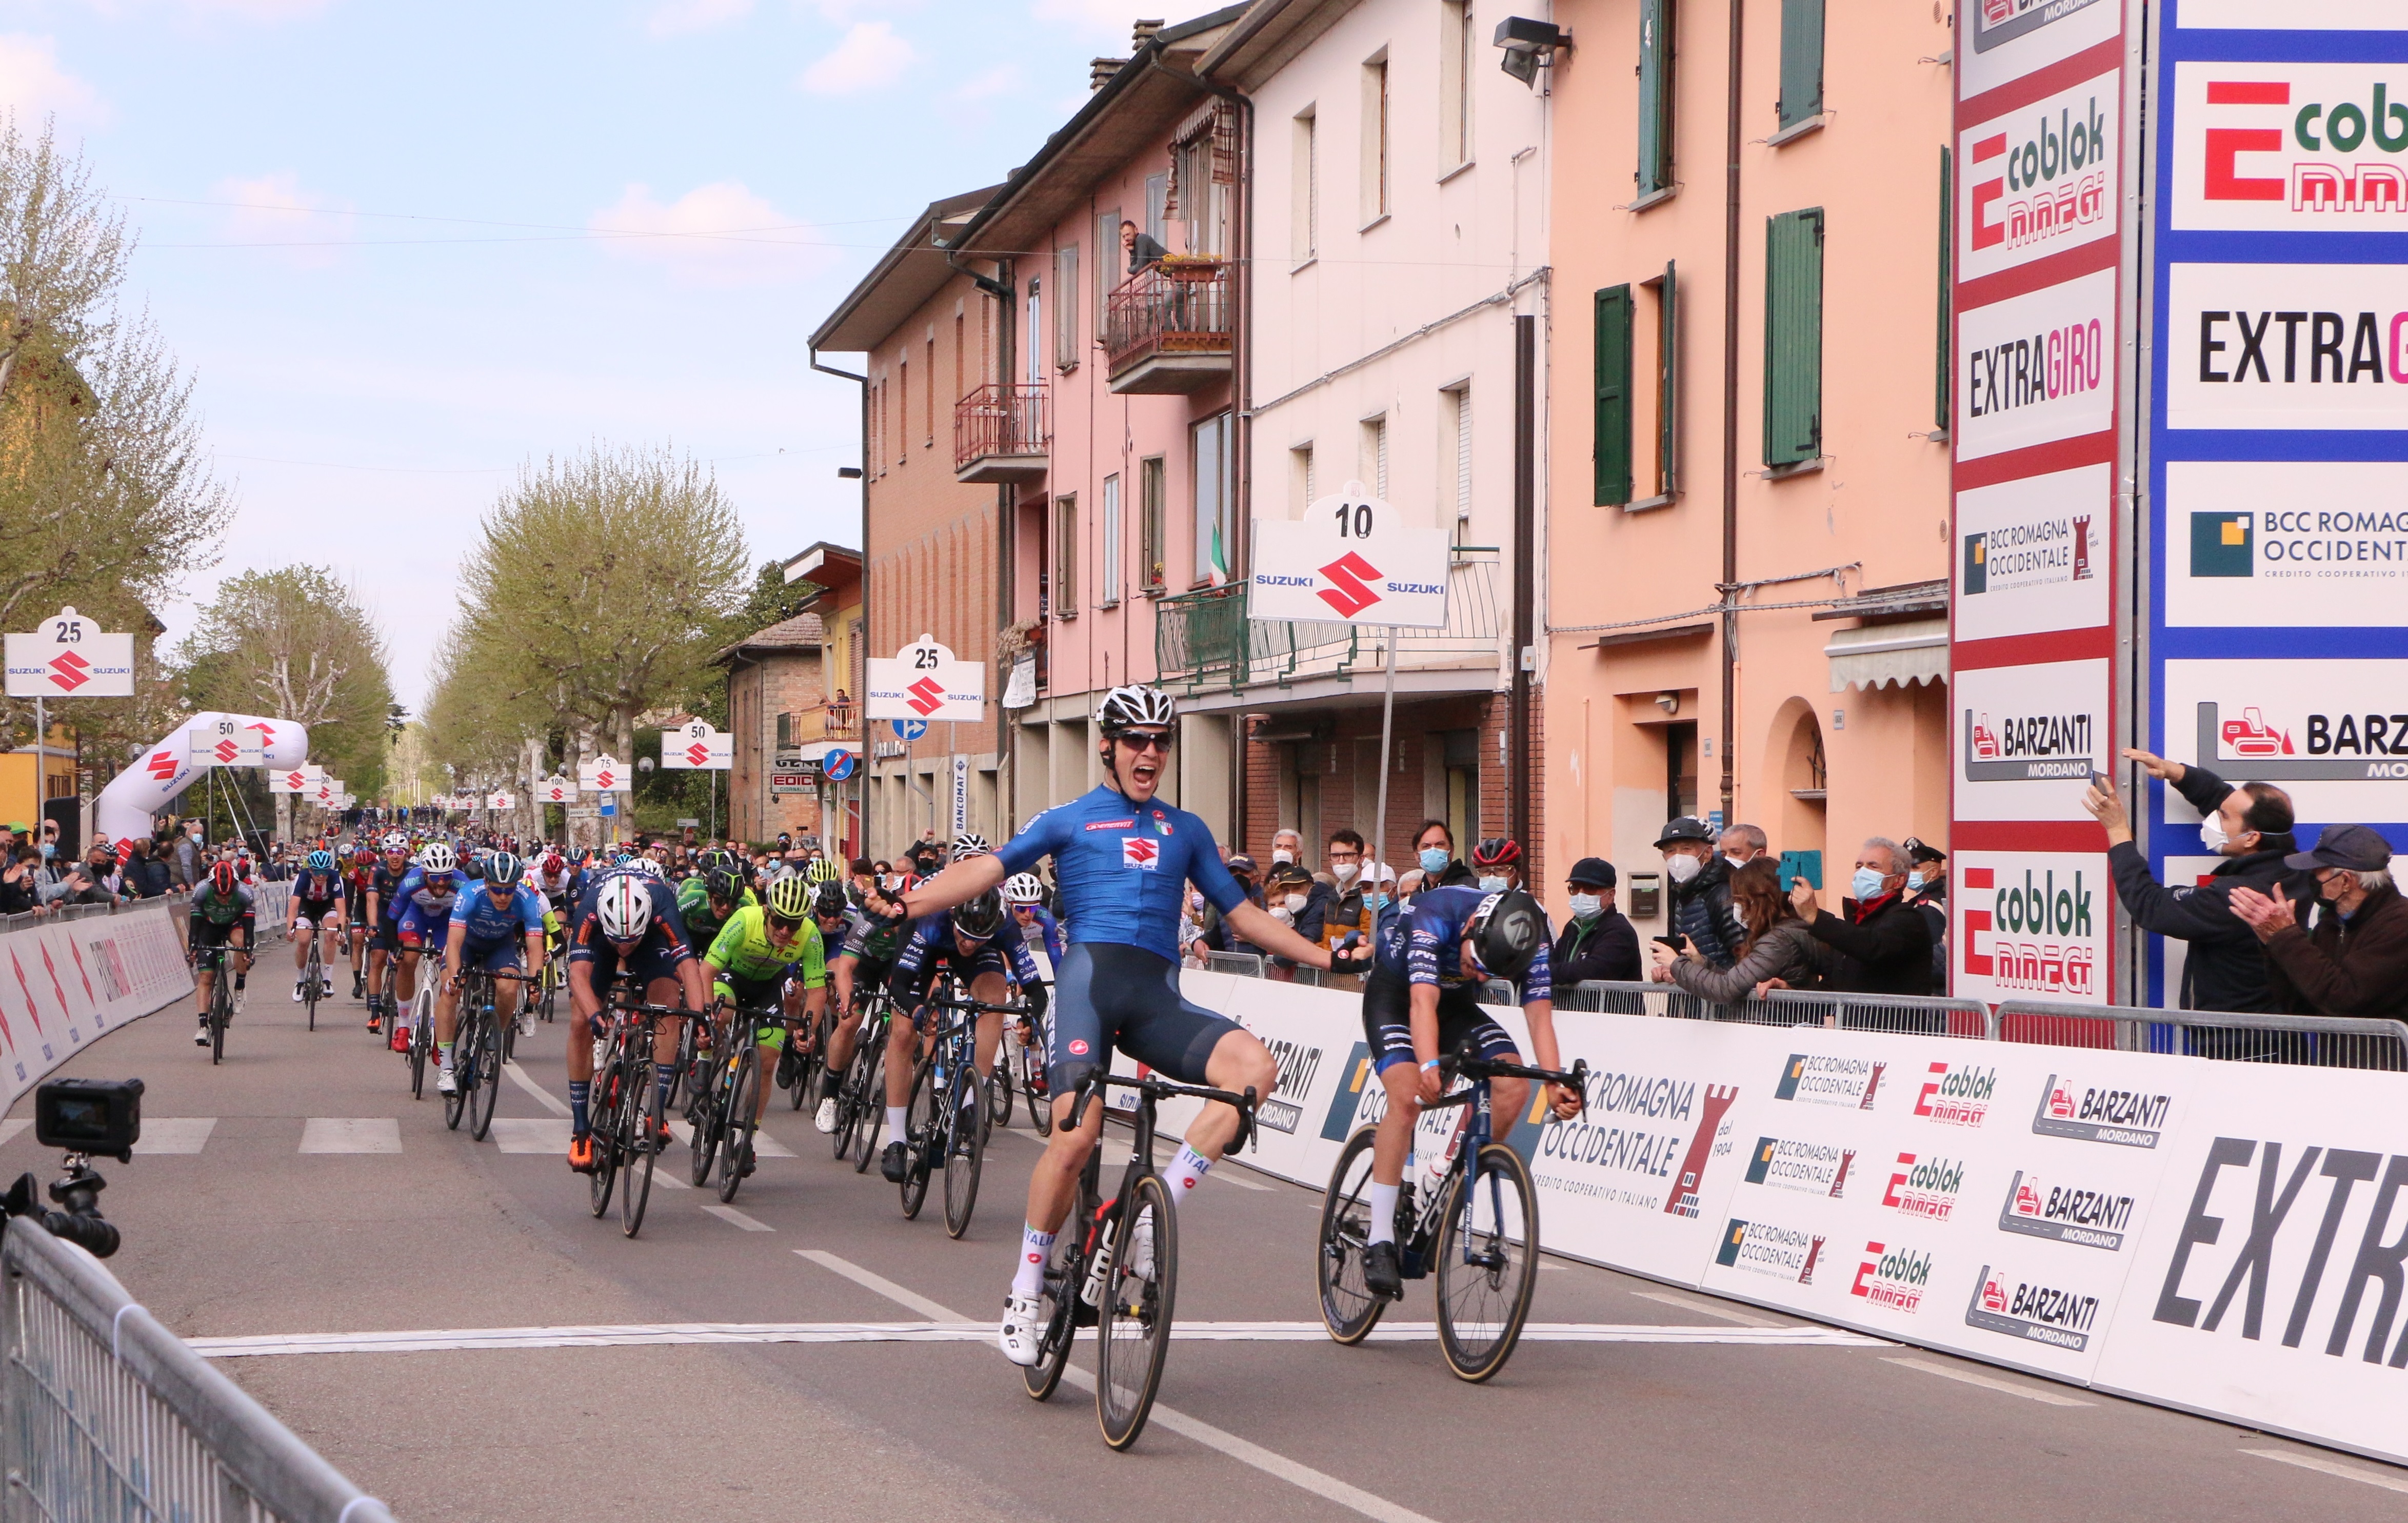 Trofeo BCC Romagna Occidentale – Memorial Sauro Coppini per ciclisti U23, prende il via da Bubano e Mordano il 2022 organizzativo di ExtraGiro